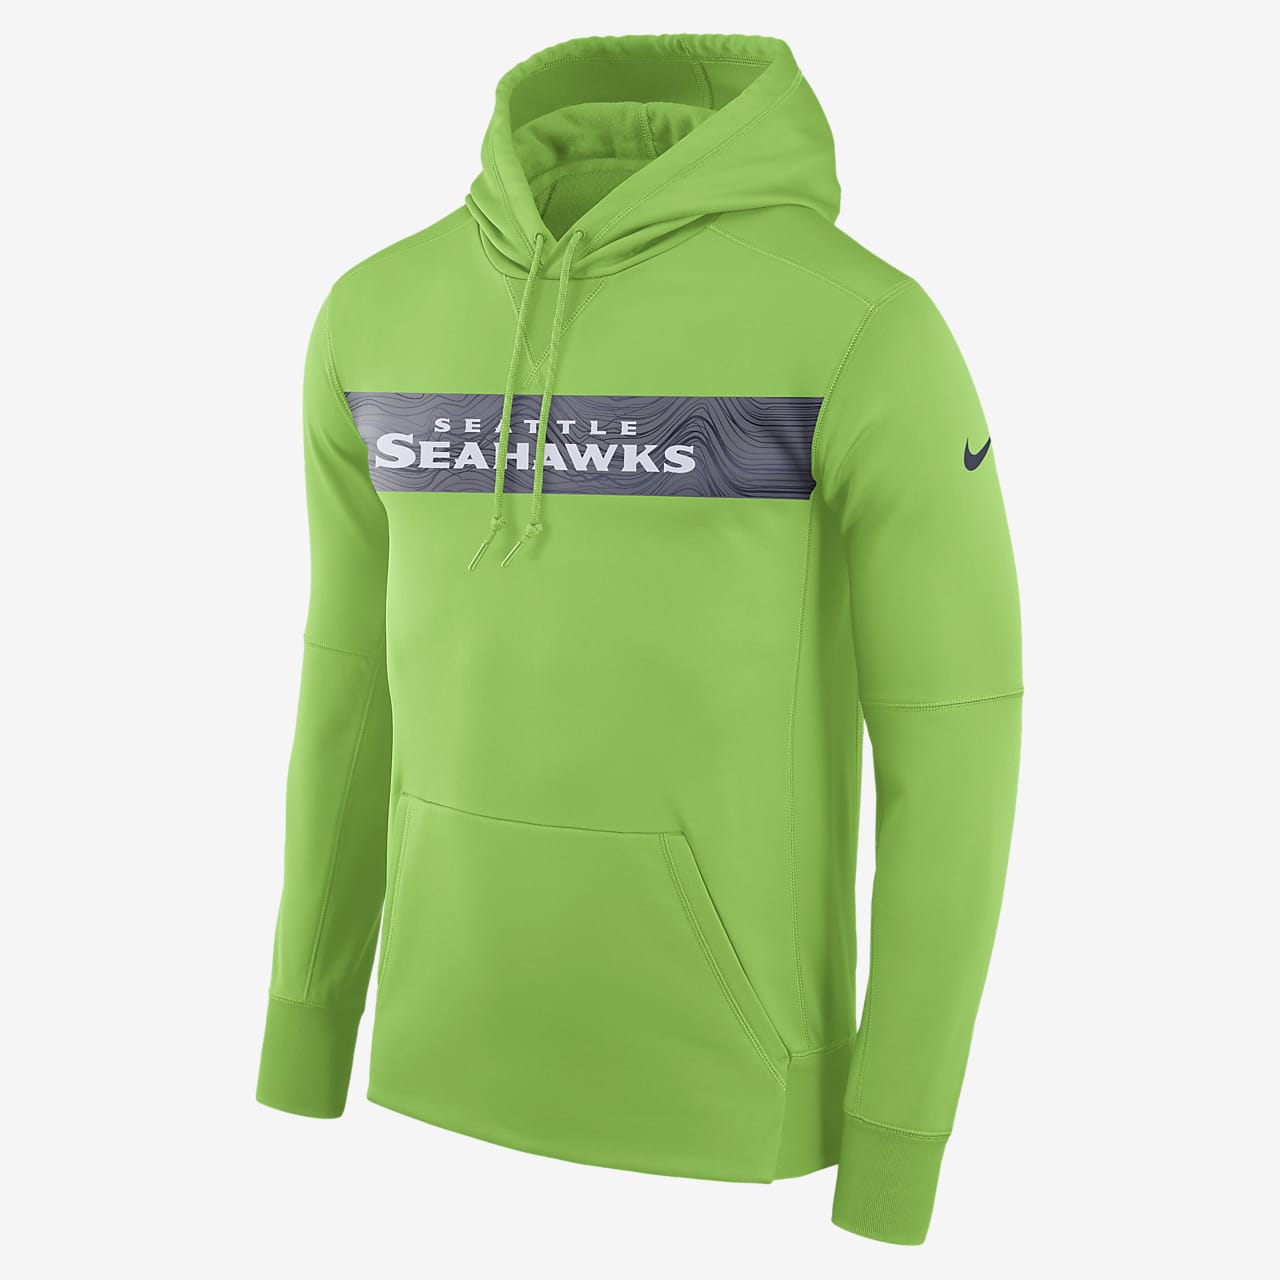 seahawks sweatshirt no hood